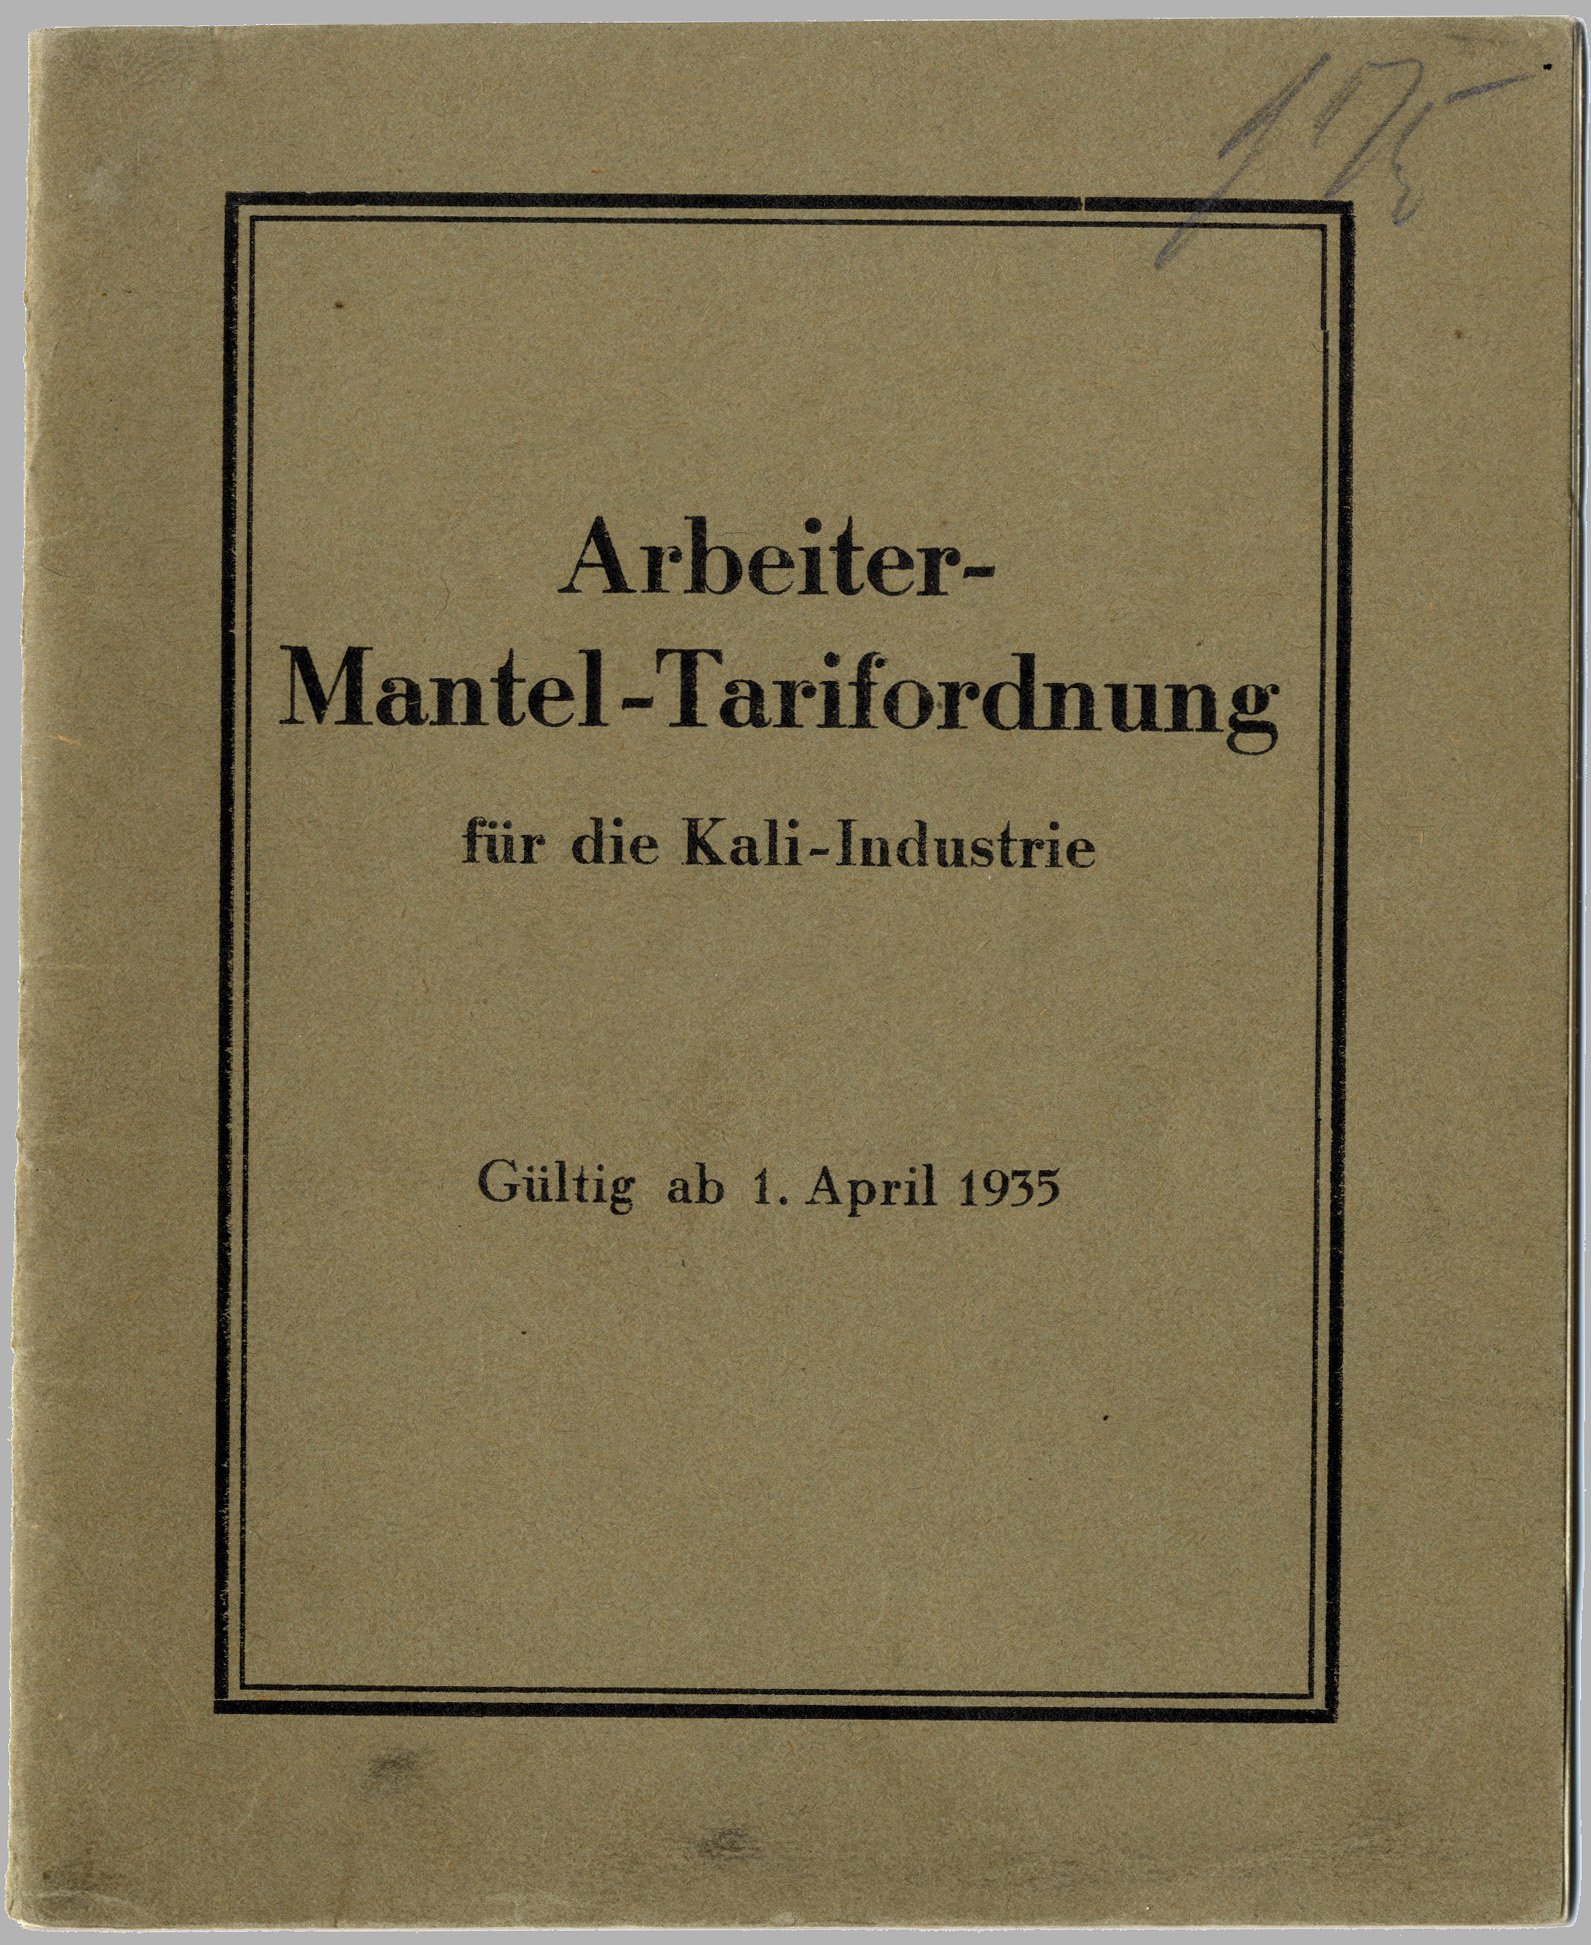 Arbeiter-Mantel-Tarifordnung für die Kali-Industrie gültig ab 1. April 1935 (Werra-Kalibergbau-Museum, Heringen/W. CC BY-NC-SA)